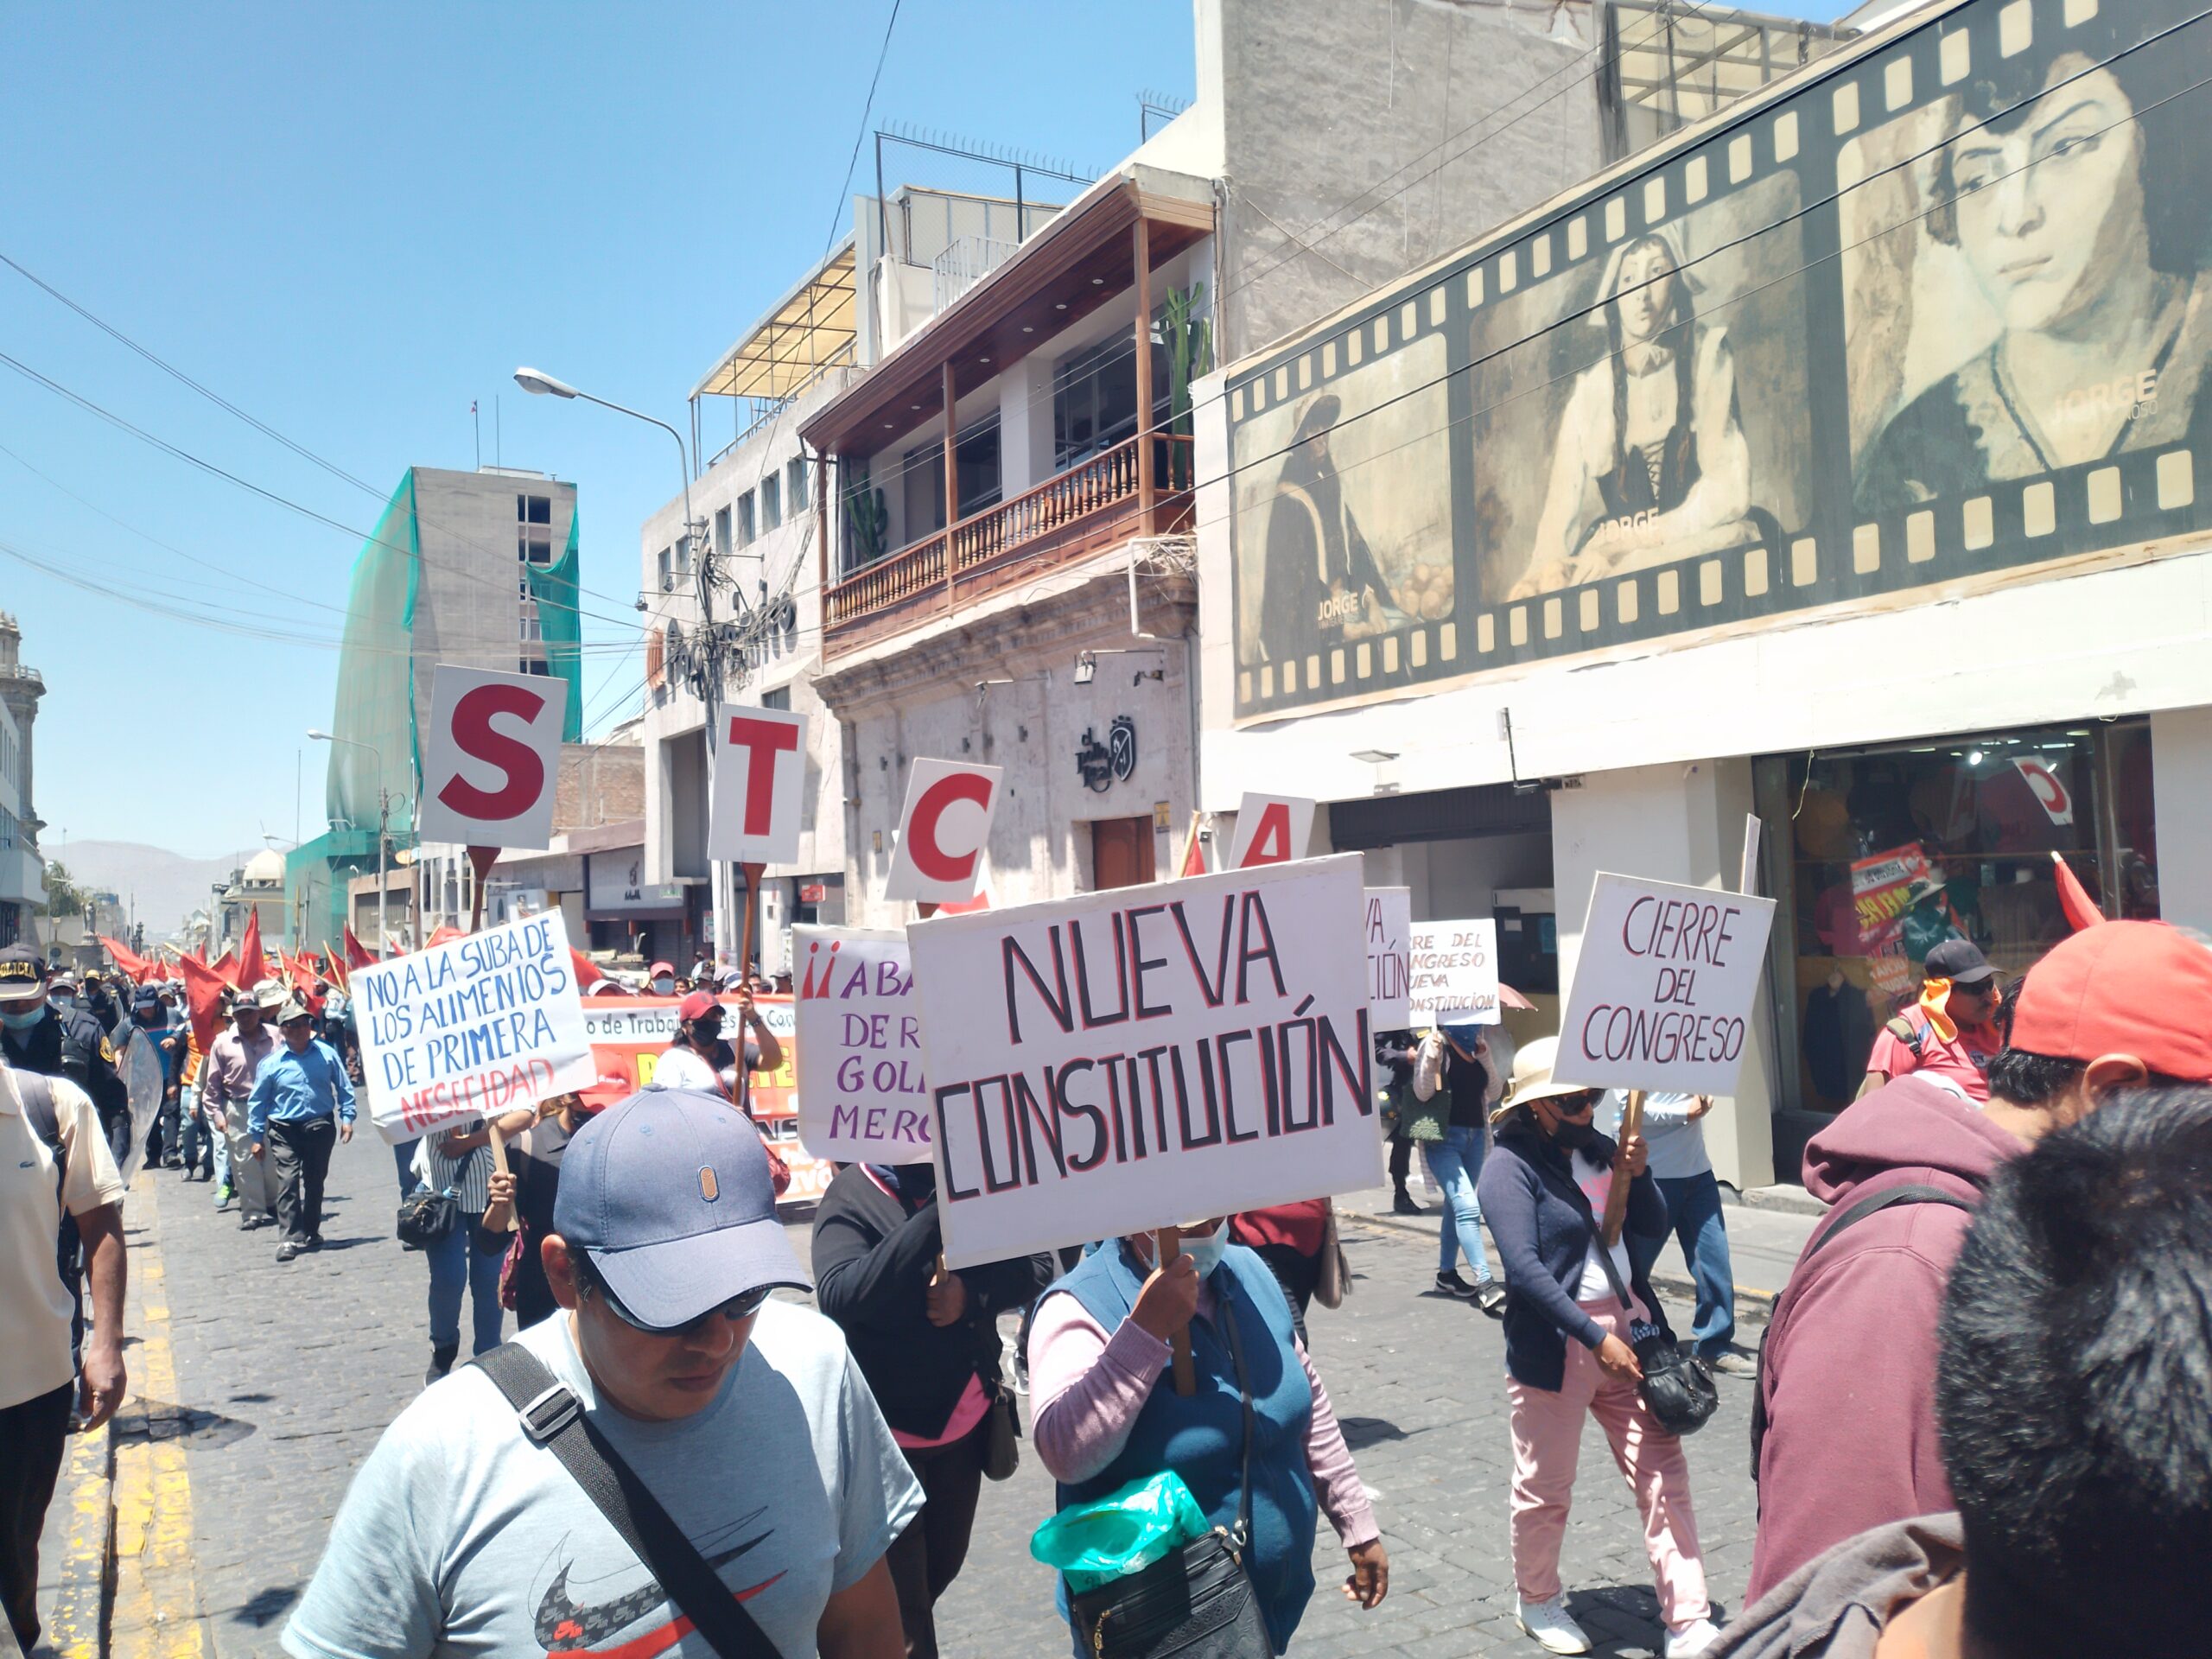 Arequipa: FDTA marcha exigiendo el cierre del Congreso por afectar gobernabilidad